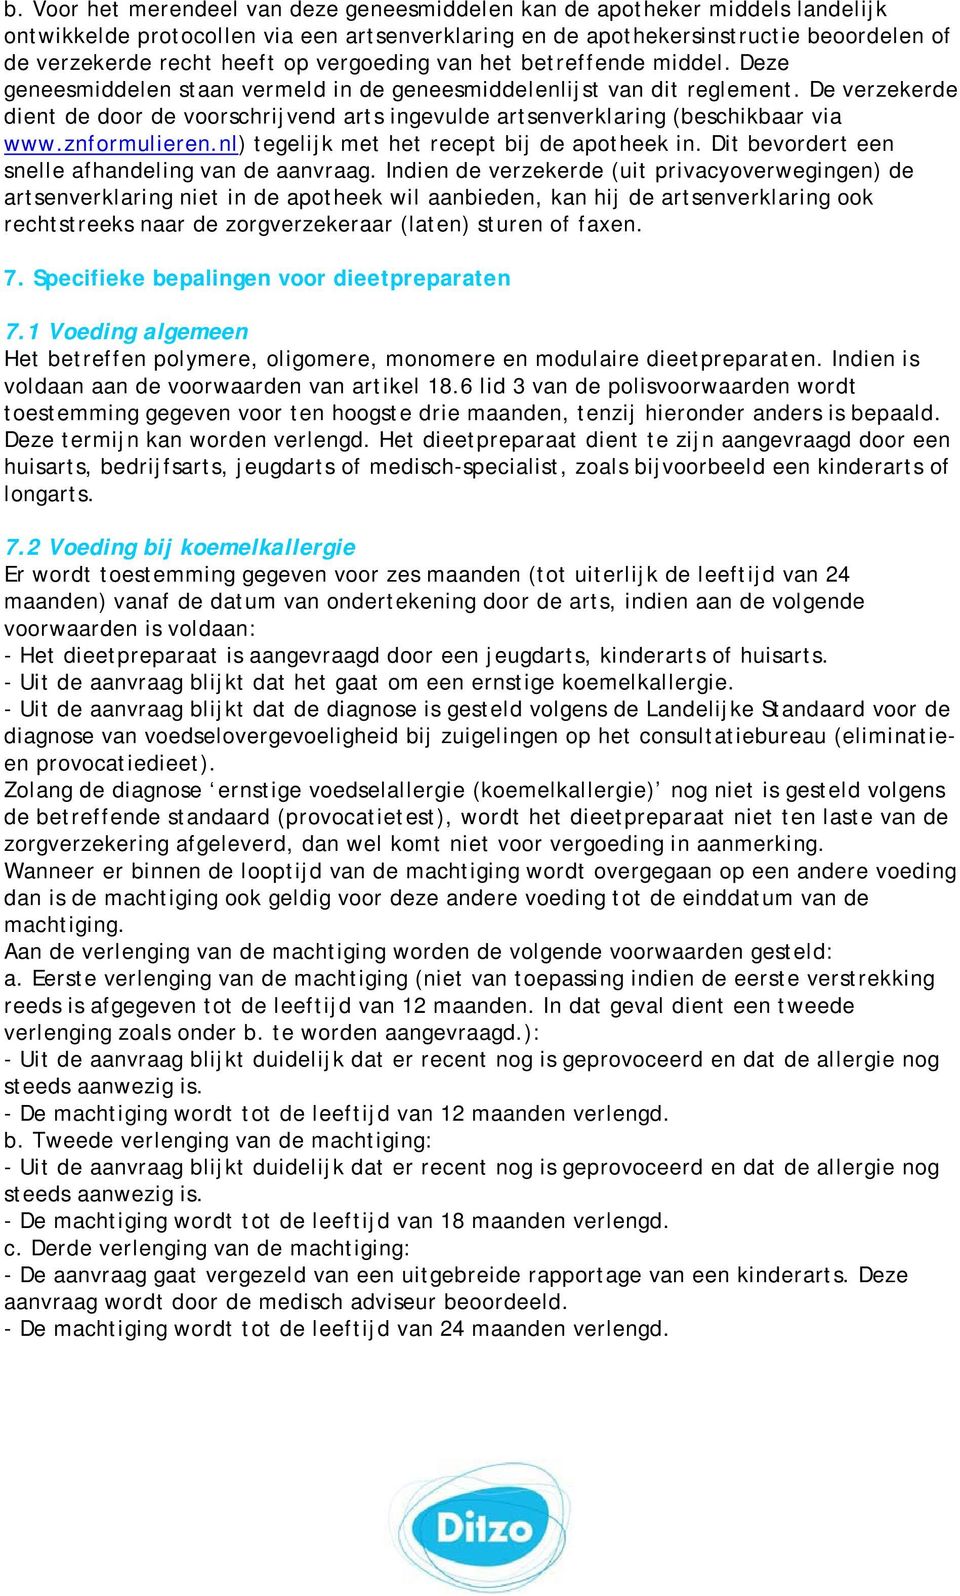 De verzekerde dient de door de voorschrijvend arts ingevulde artsenverklaring (beschikbaar via www.znformulieren.nl) tegelijk met het recept bij de apotheek in.